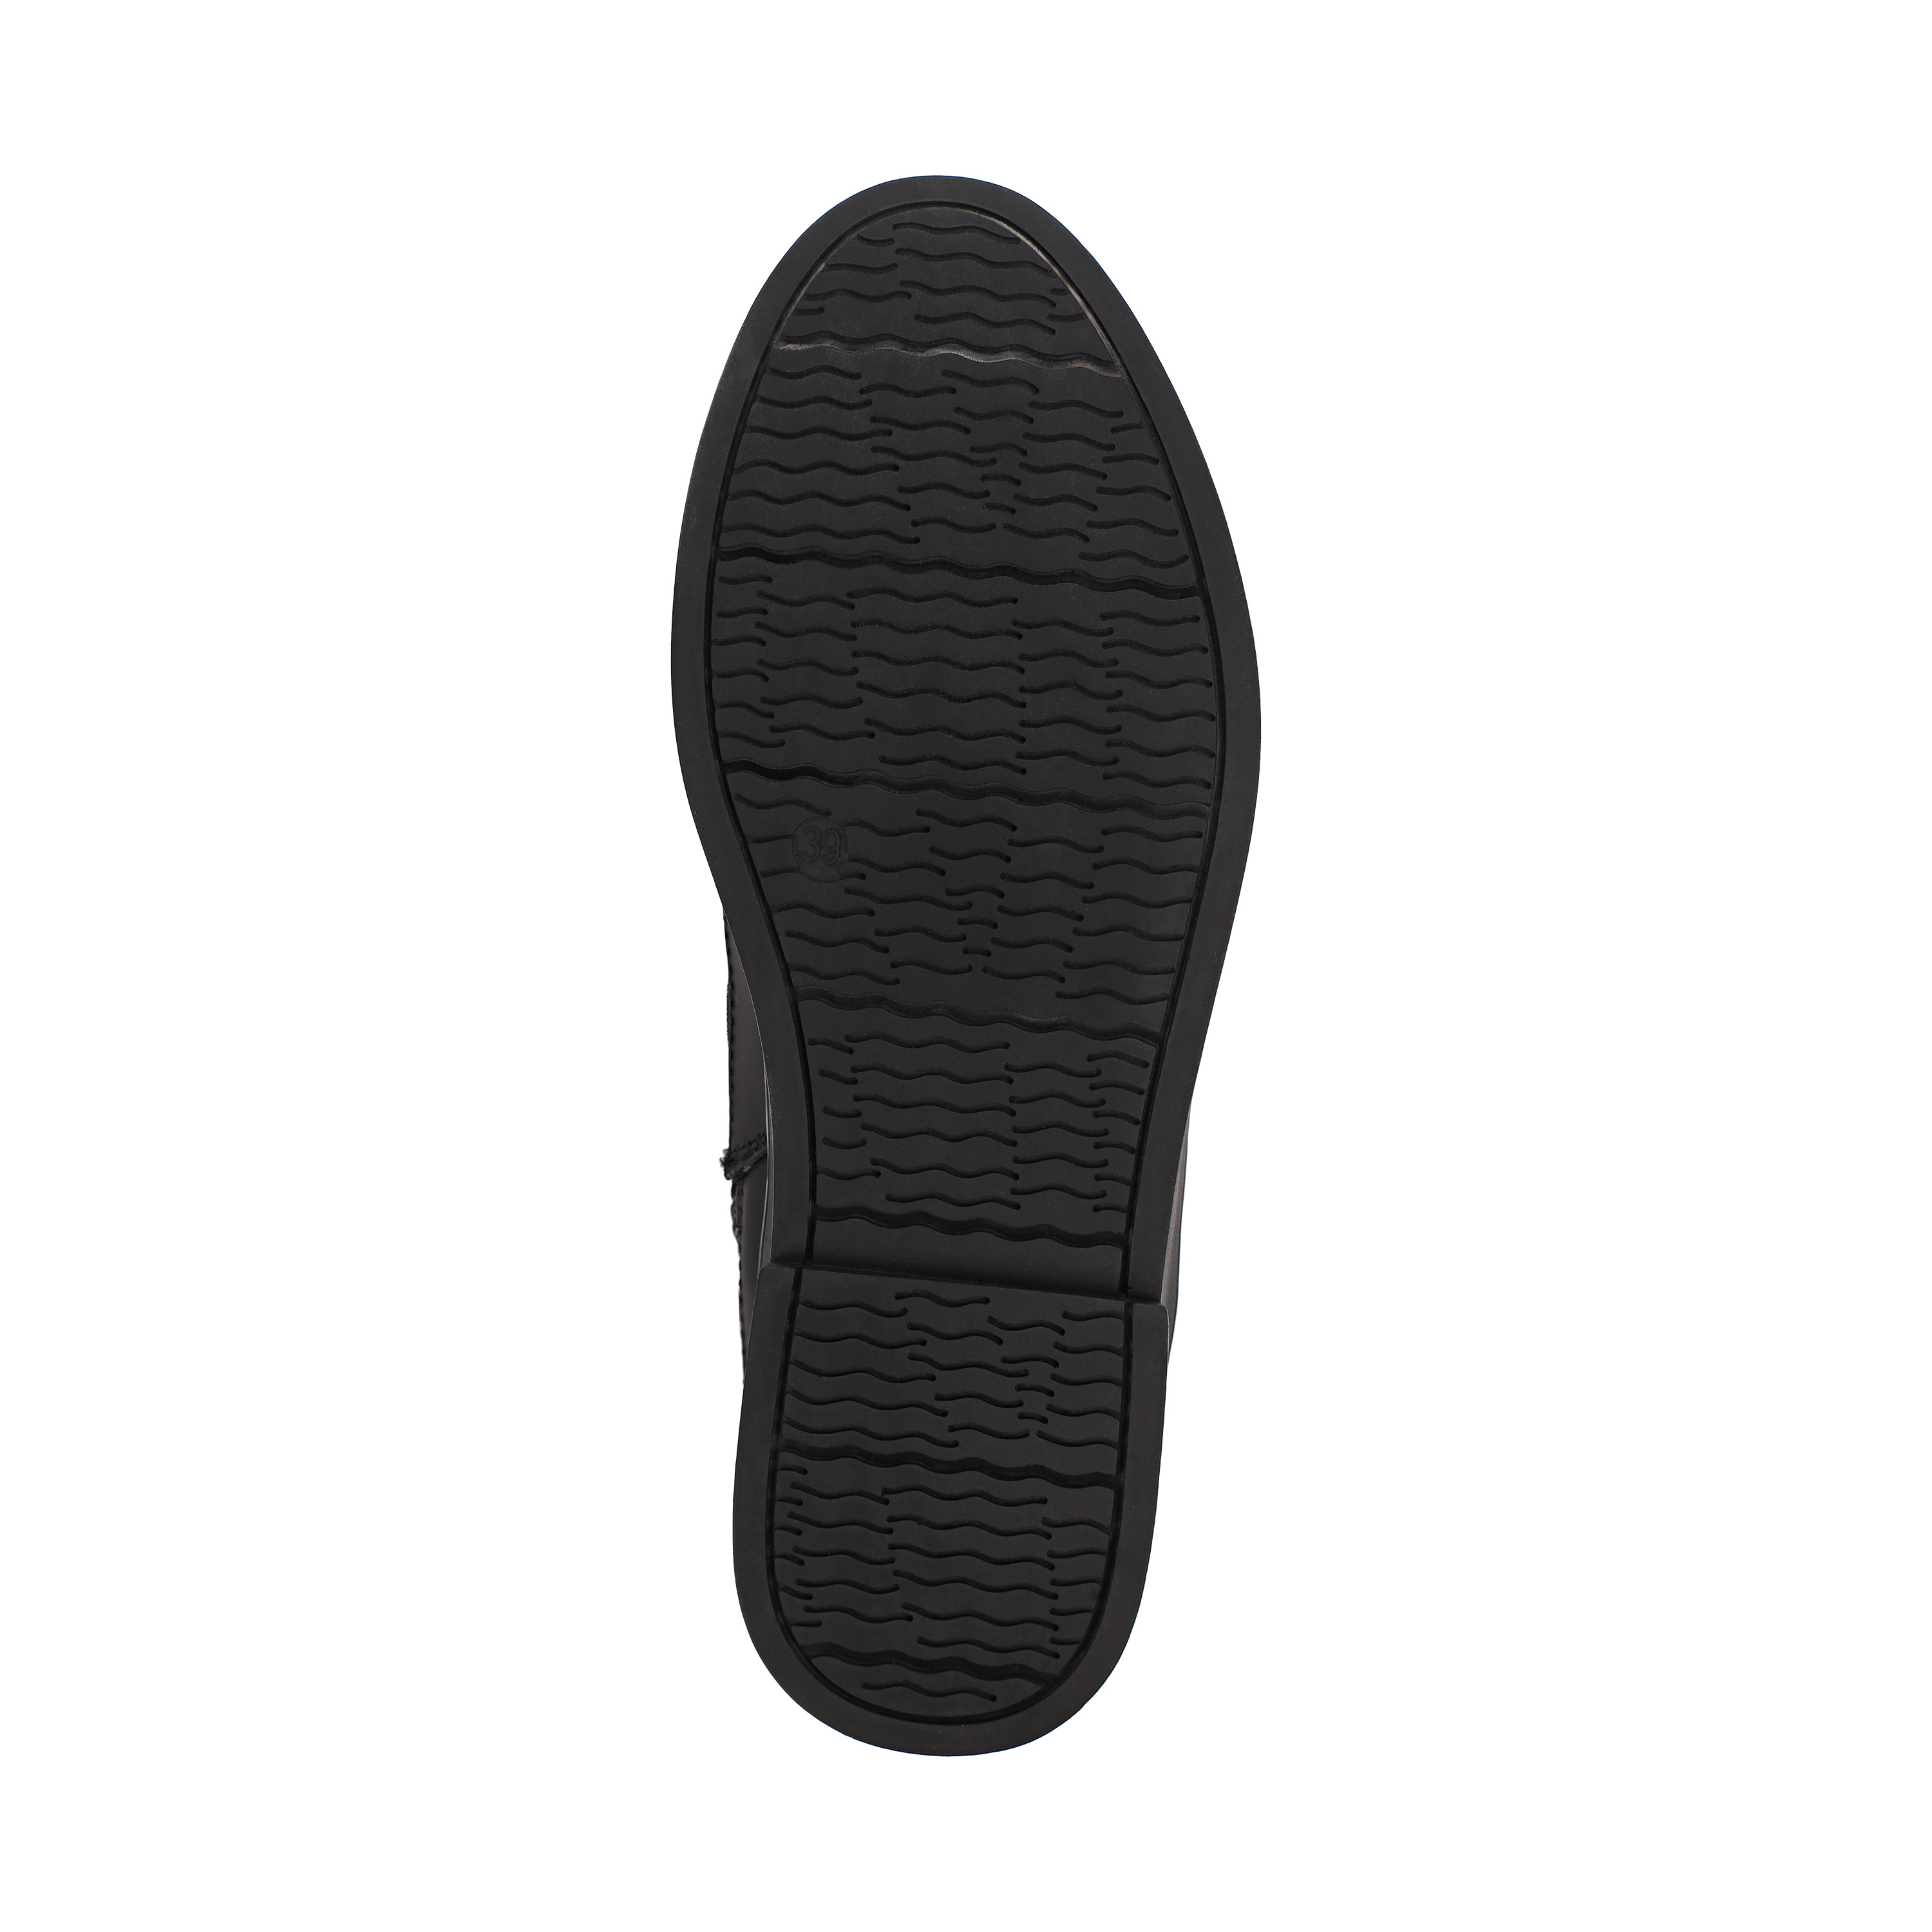 Ботинки Thomas Munz 233-584A-30202 233-584A-30202, цвет черный, размер 40 ботинки актив - фото 4